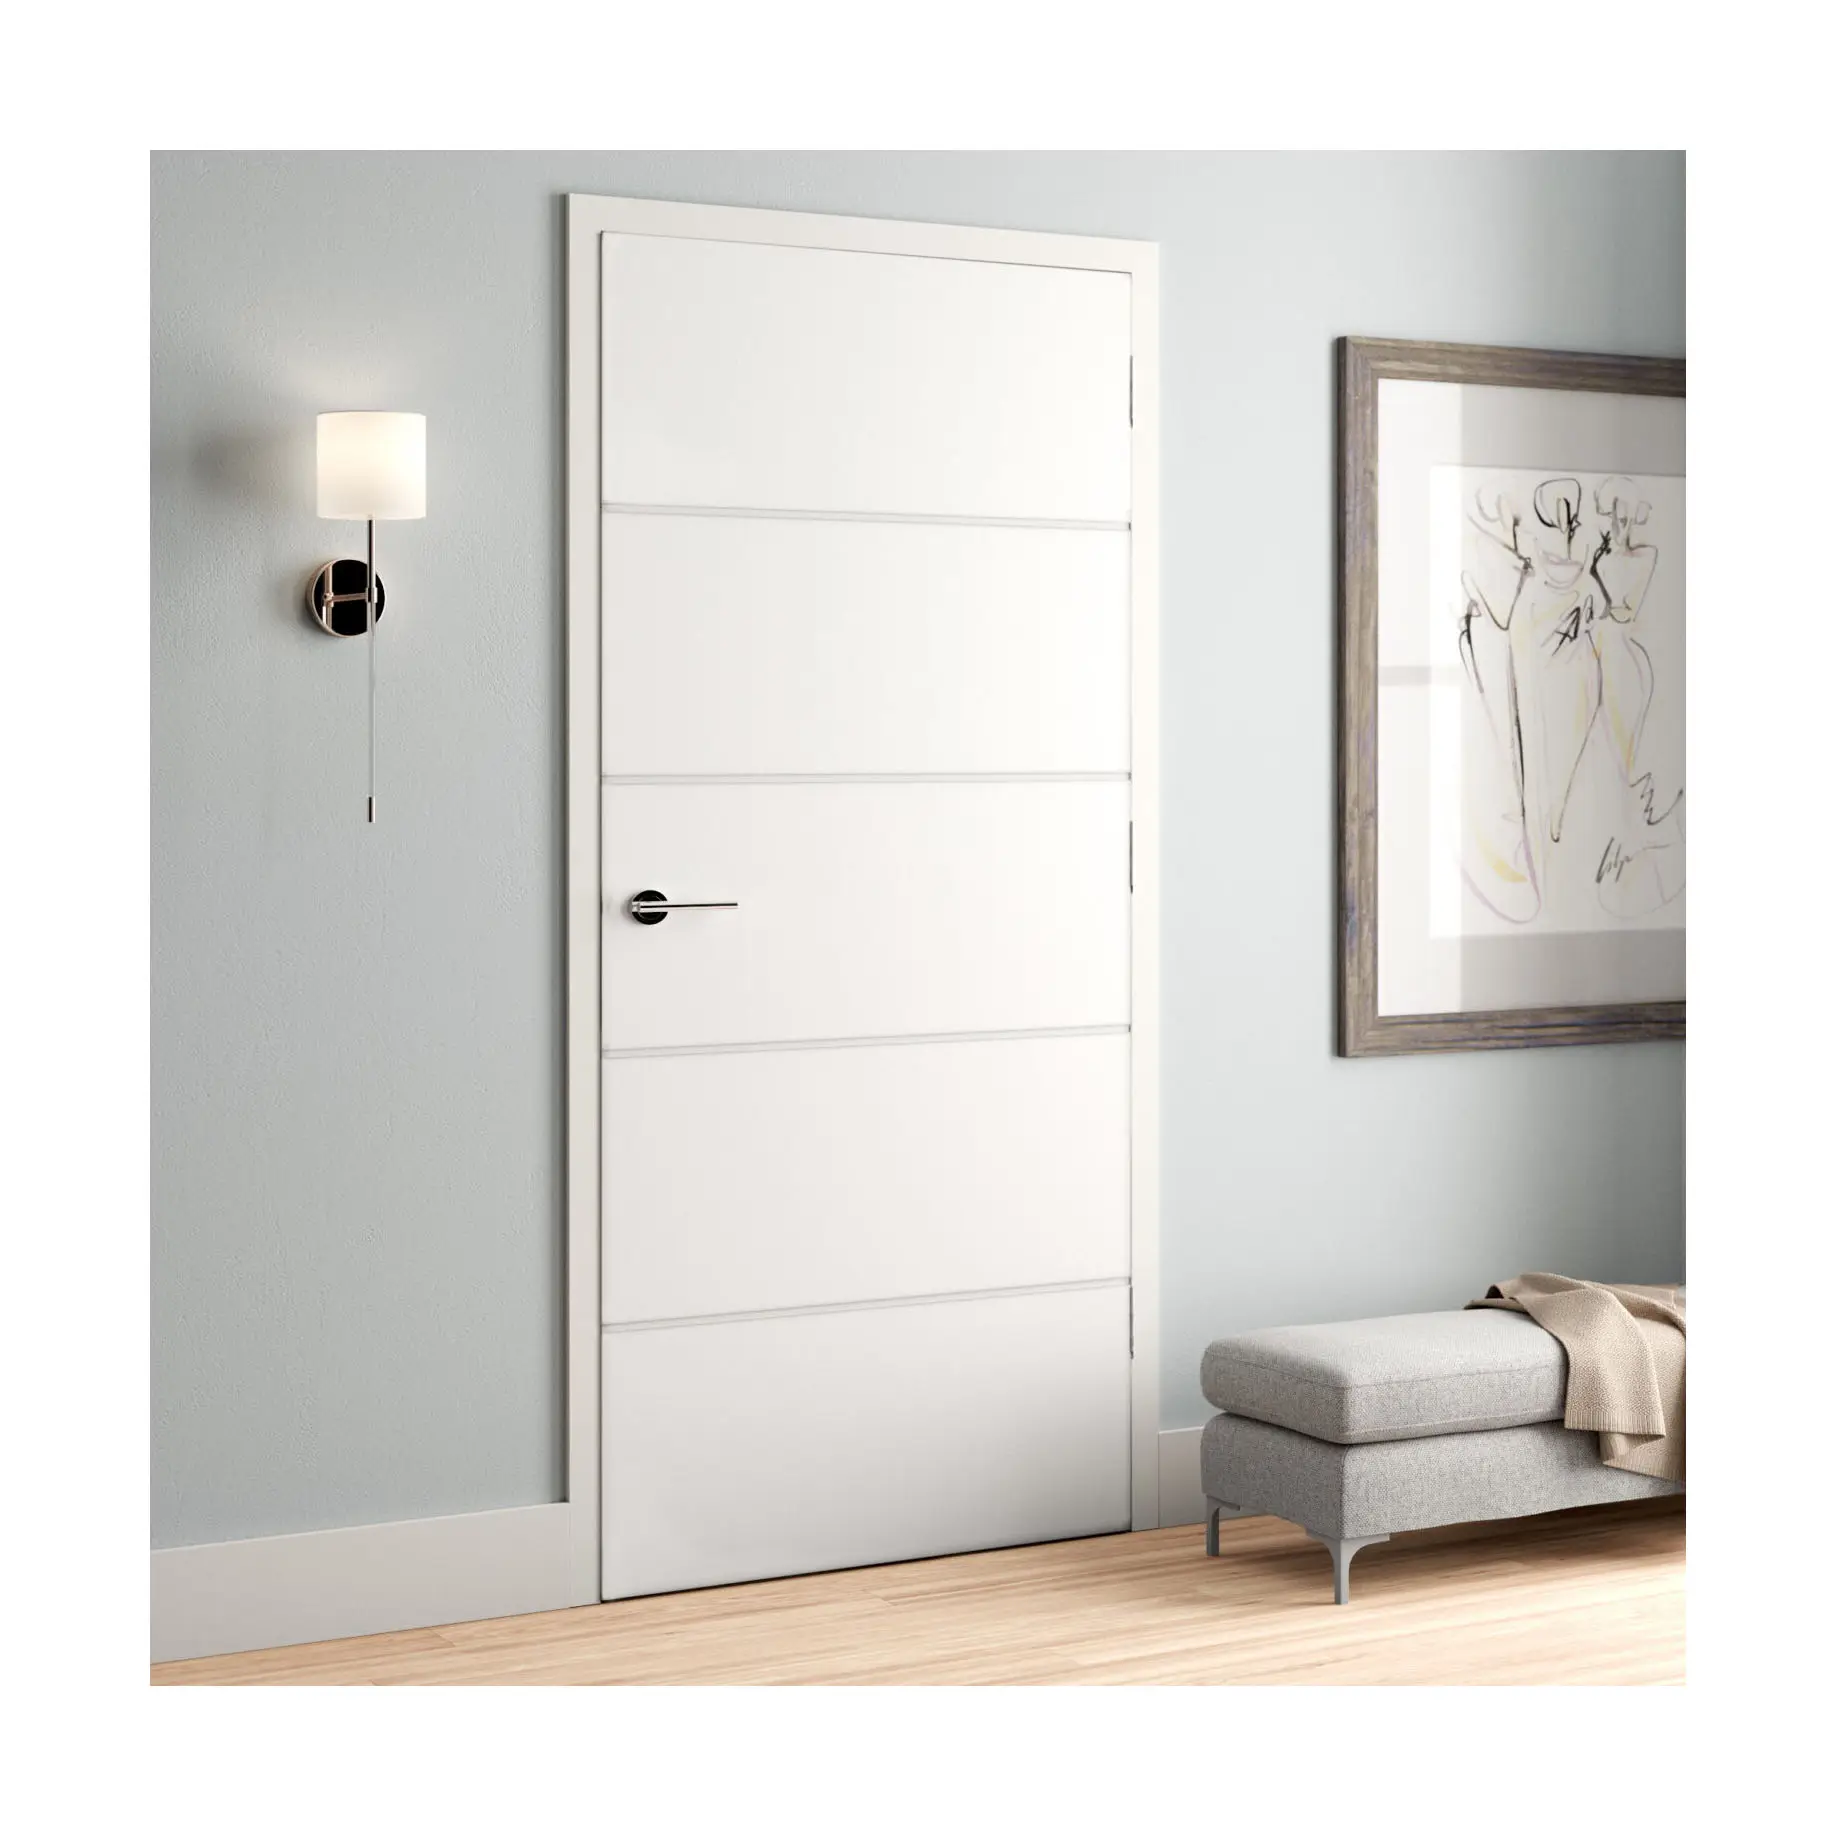 أبواب خشبية داخلية ACE قابلة للطي مزدوجة باب داخلي من الخشب الصلب عالي الجودة لغرف النوم باب داخلي من الخشب الصلب بتصميم عصري